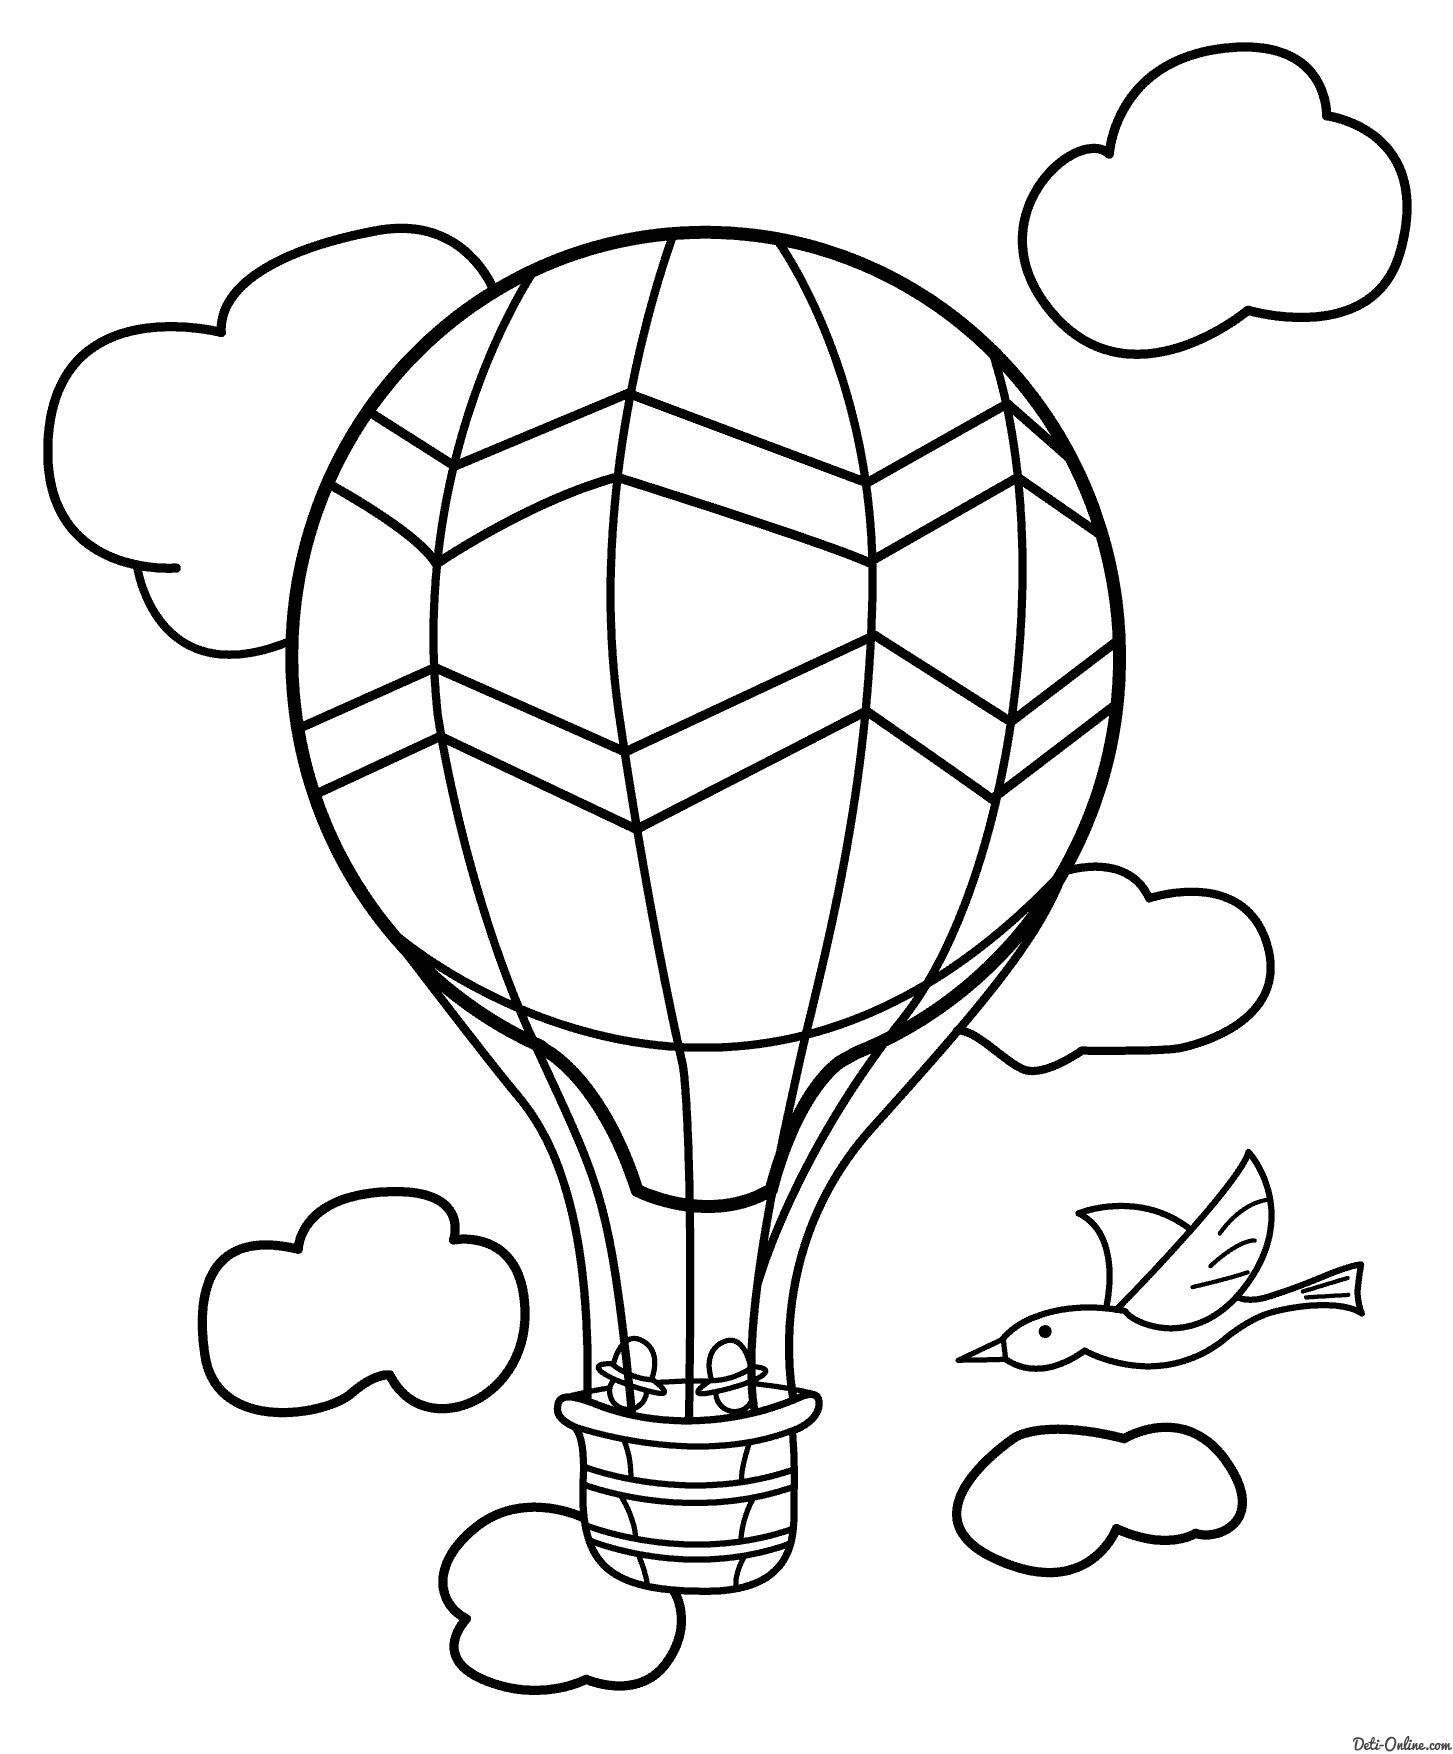 Скачать бесплатные раскраски для детей. Раскраски детские онлайн бесплатно. Раскраски для детей с воздушными шариками. Раскраски для детей скачать. Детские раскраски с воздушными шариками.